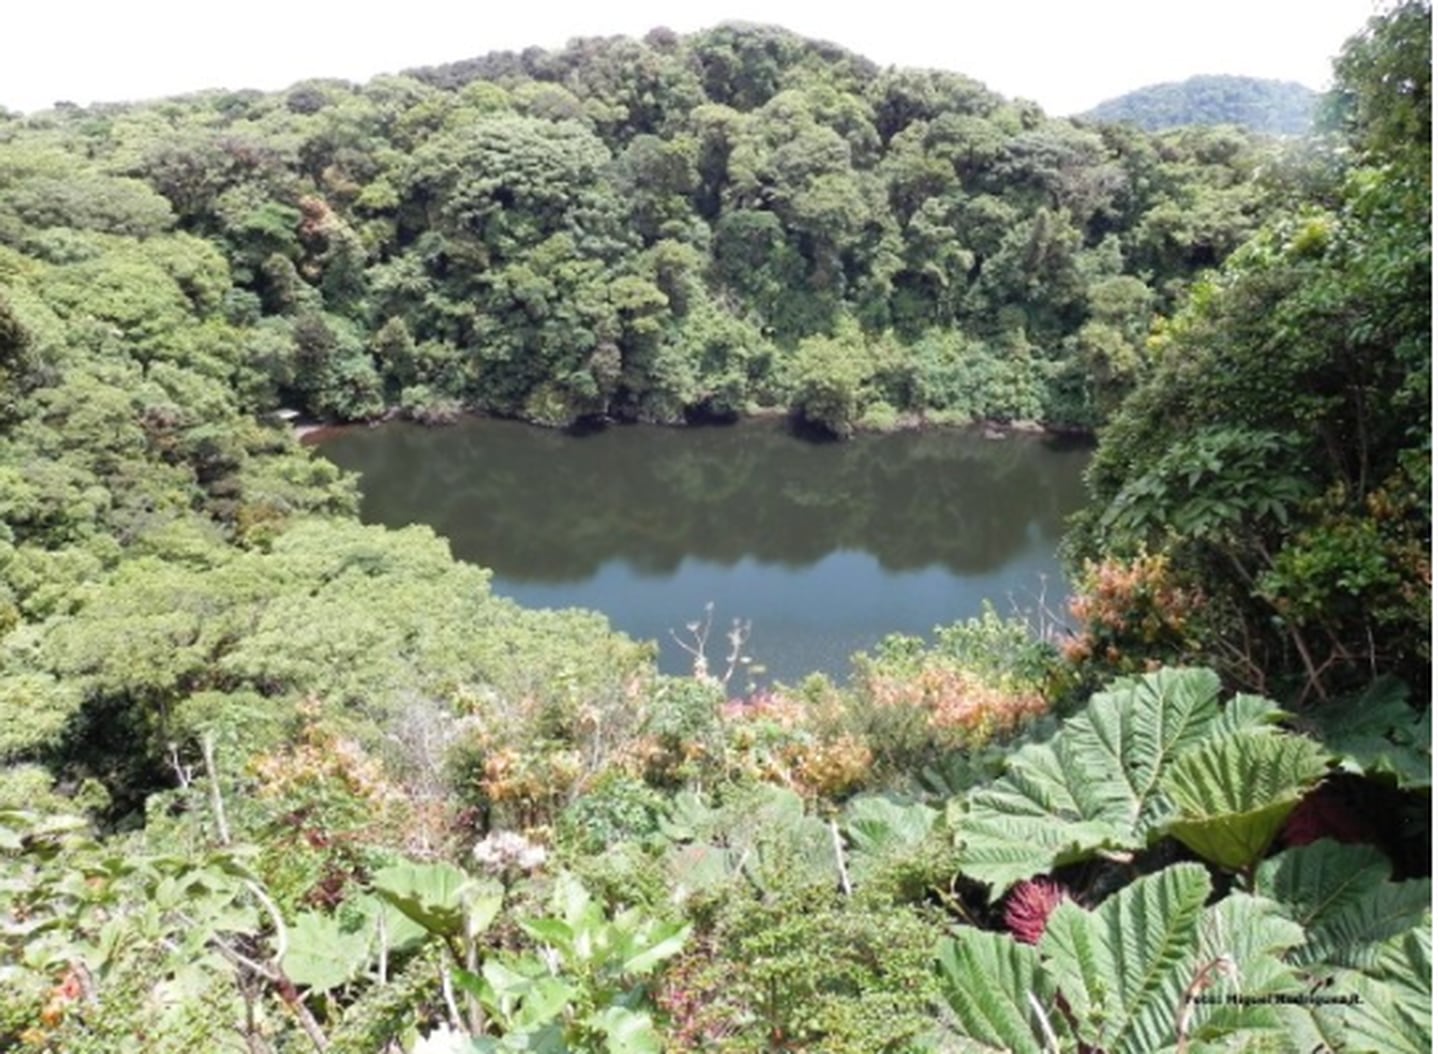 El Parque Nacional Braulio Carrillo se ubica al norte del Valle Central, sobre la Cordillera Volcánica Central. (Sinac)